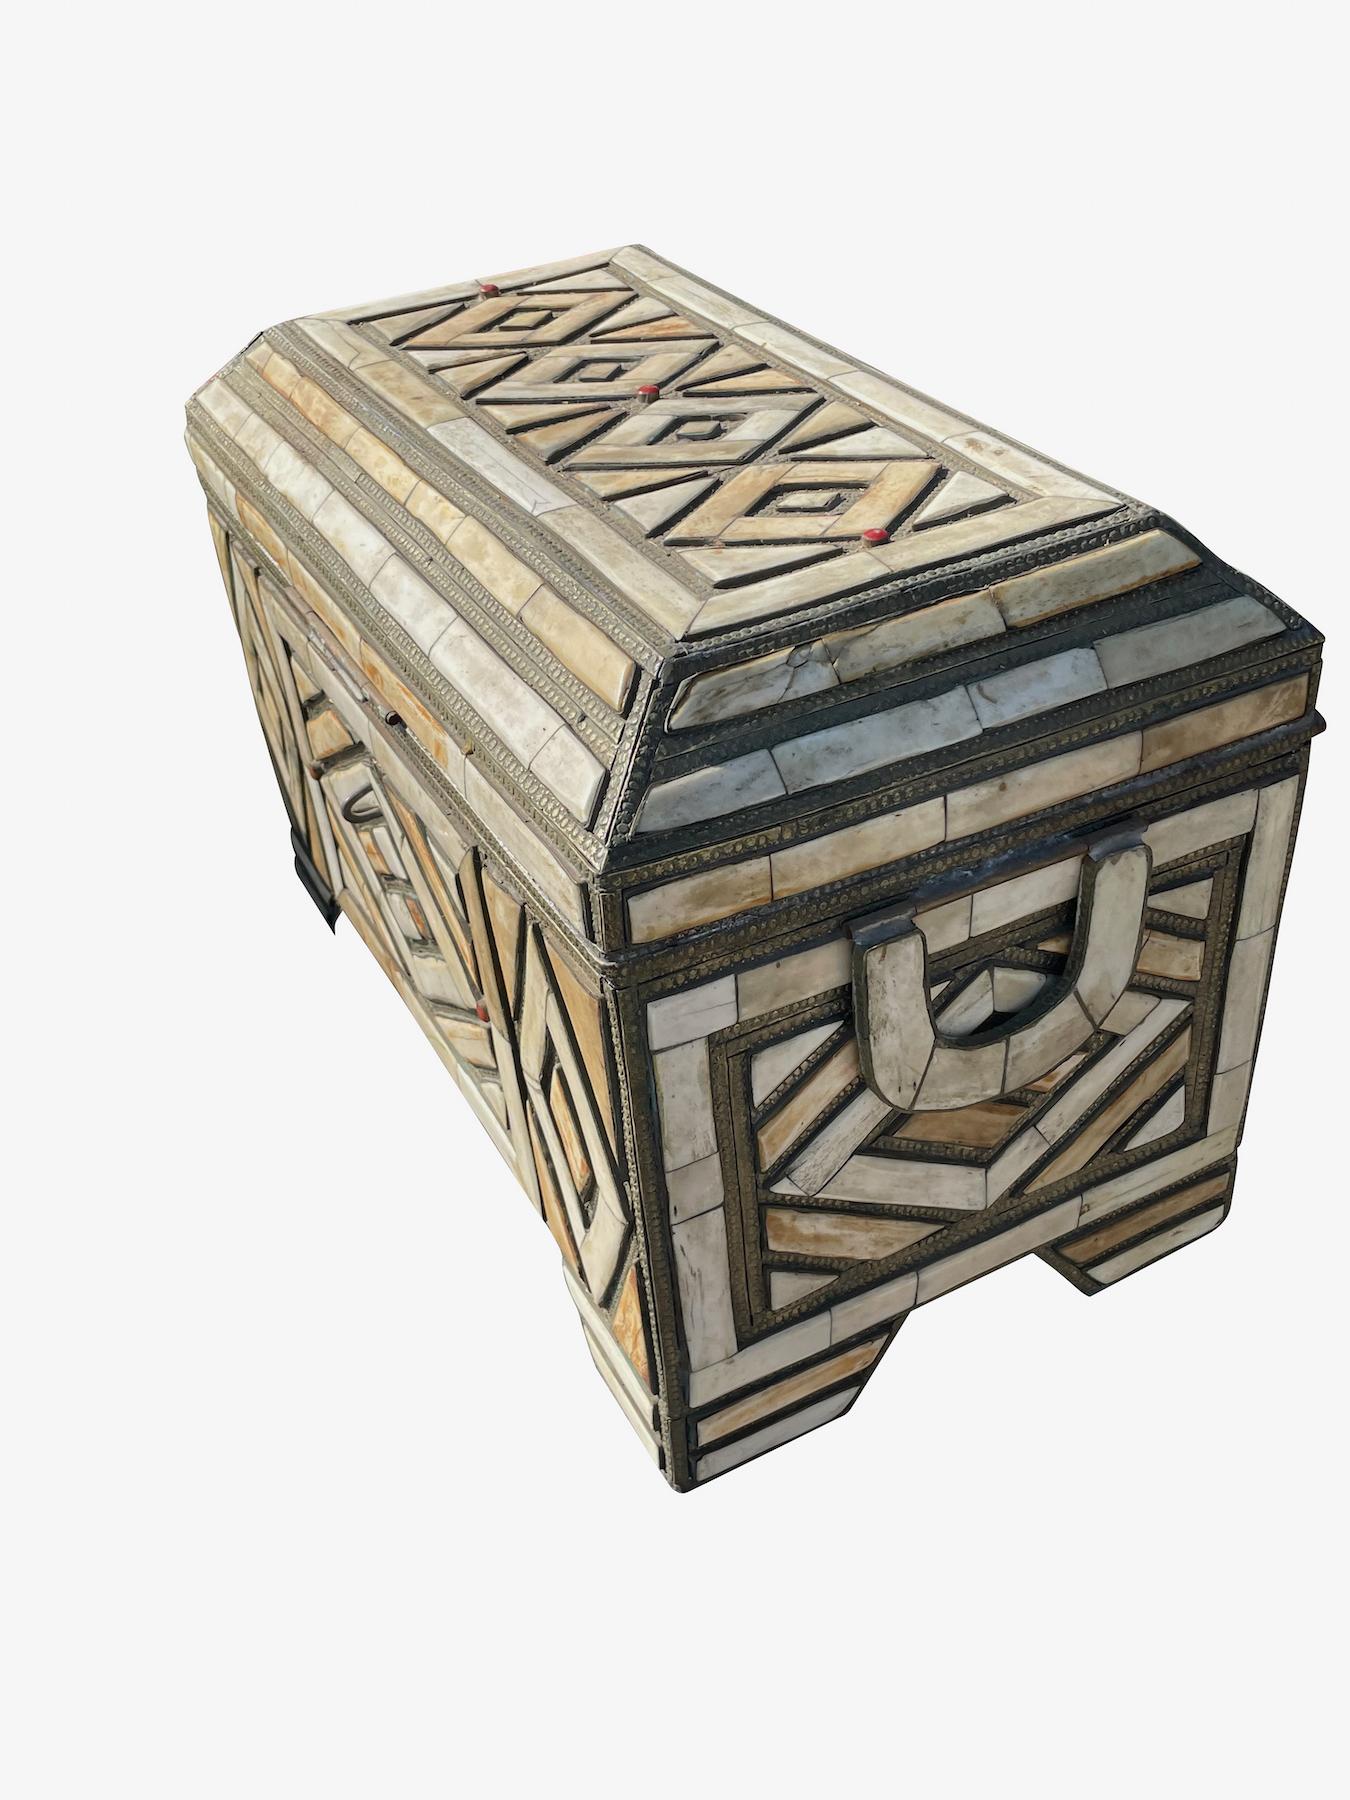 Boîte marocaine en incrustation d'os du 19e siècle.
Garniture décorative en argent.
Motif géométrique.